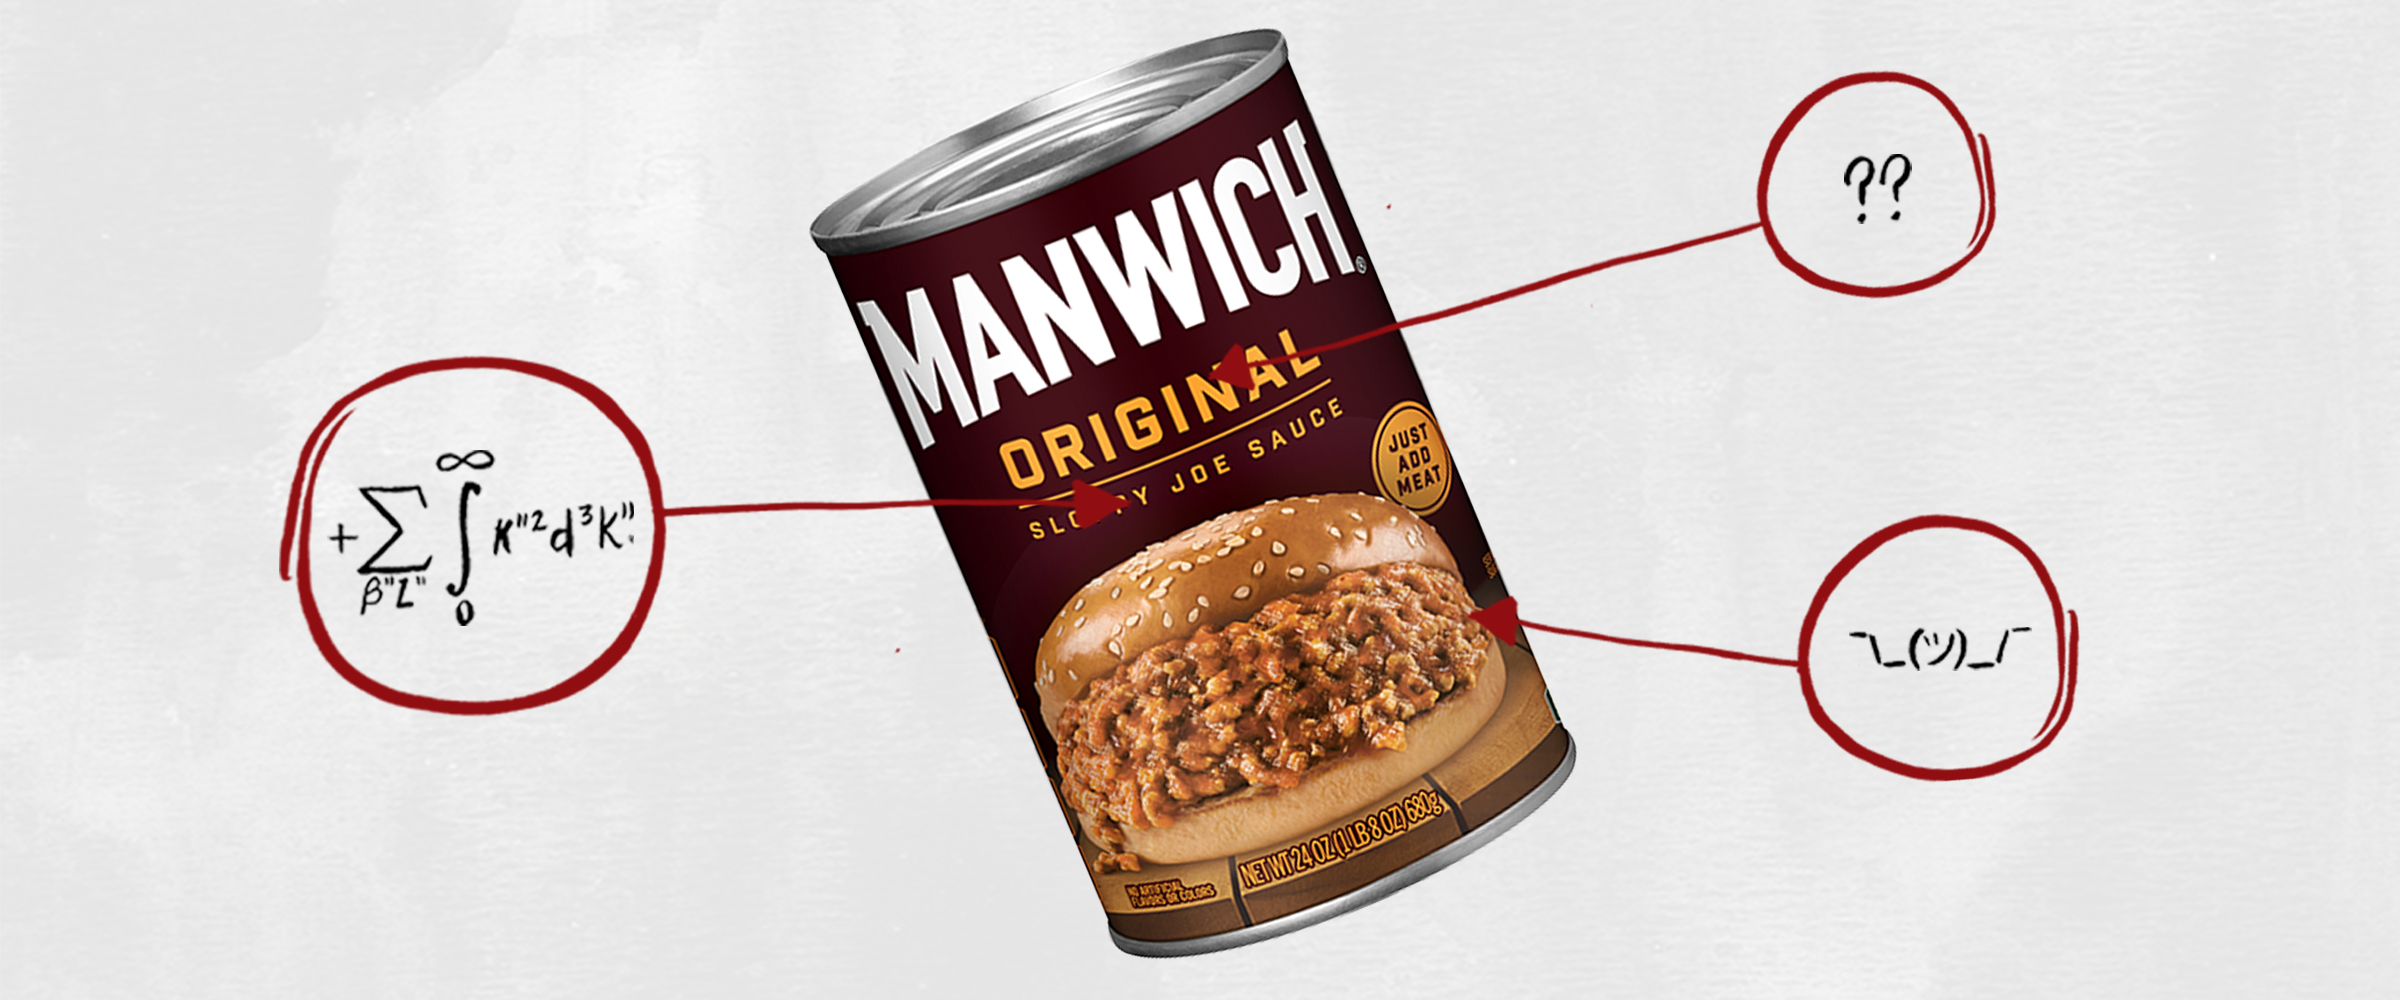 Manwich Ingredients: What's in Manwich Sloppy Joe Sauce?